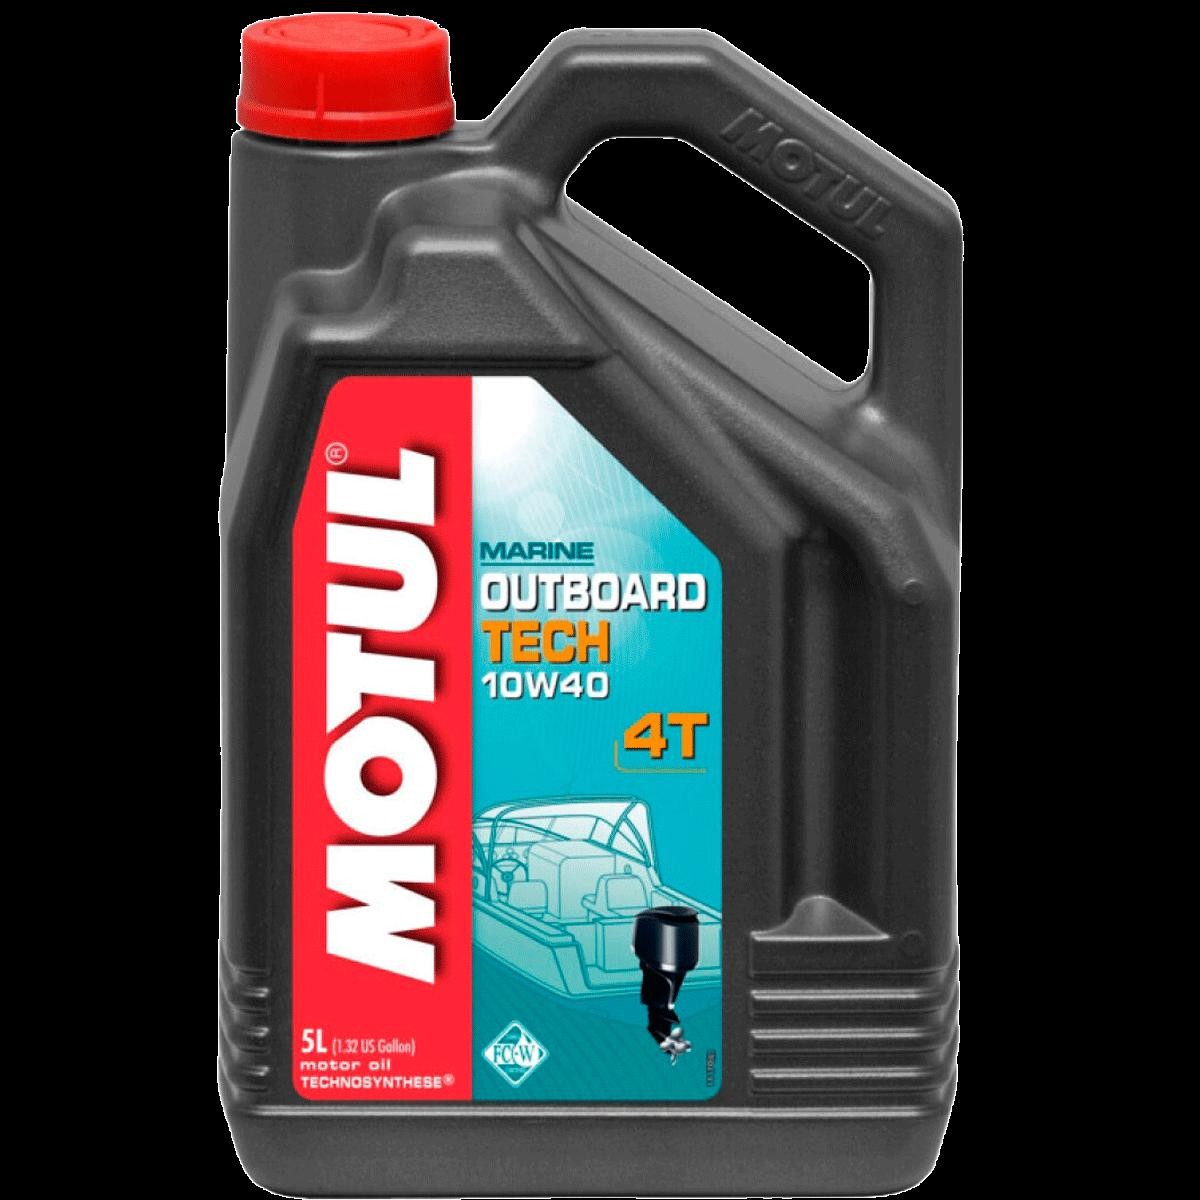 Automobile oil API SJ MOTUL - 106354 OUTBOARD TECH, 4T